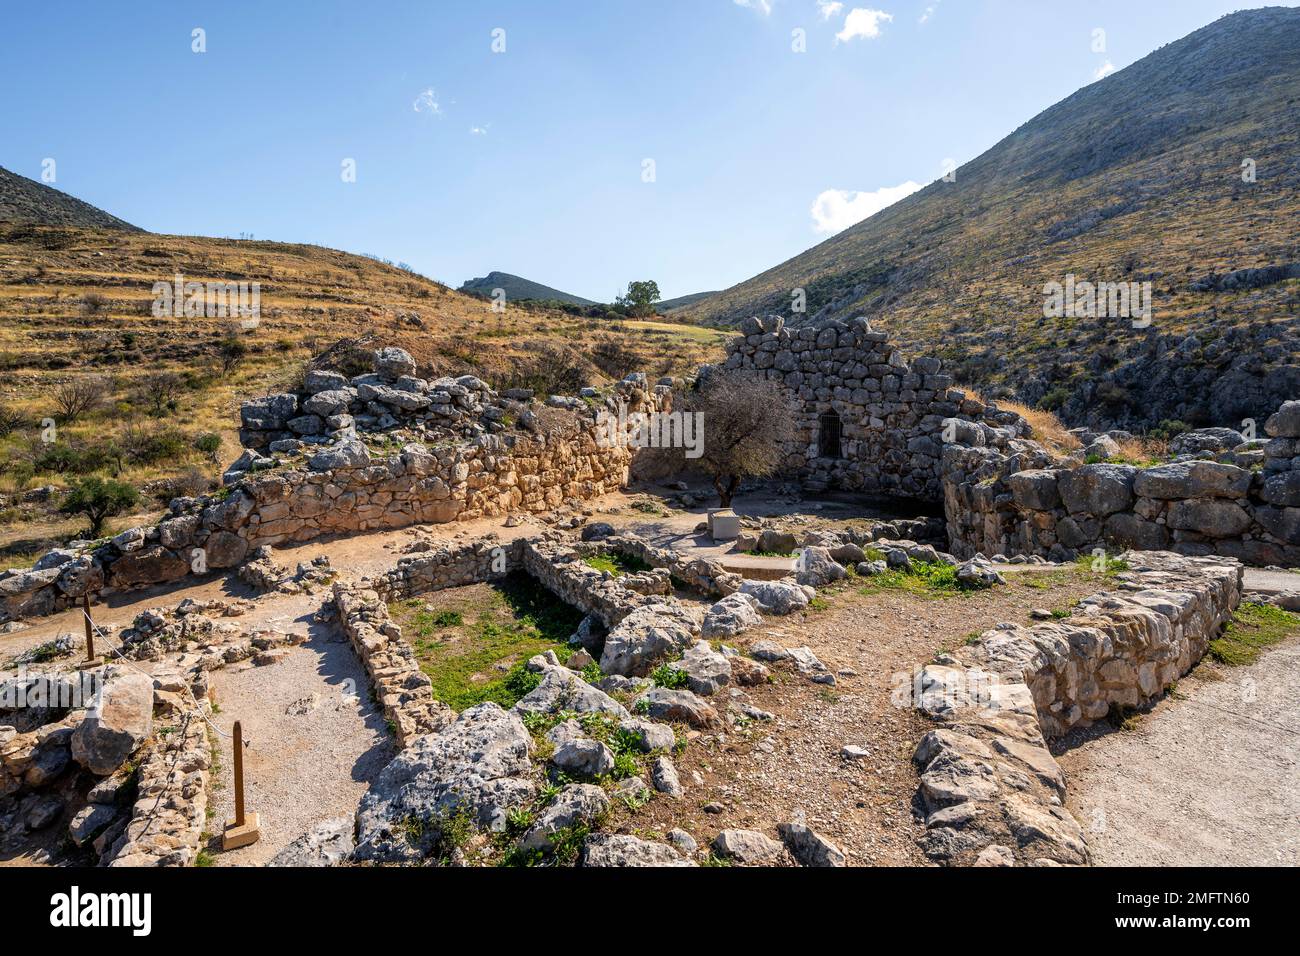 Î Ruin ÎµÎ¾Î±Î¼ÎµÎ½Î®, Micene, sito archeologico greco, Peloponneso, Grecia Foto Stock